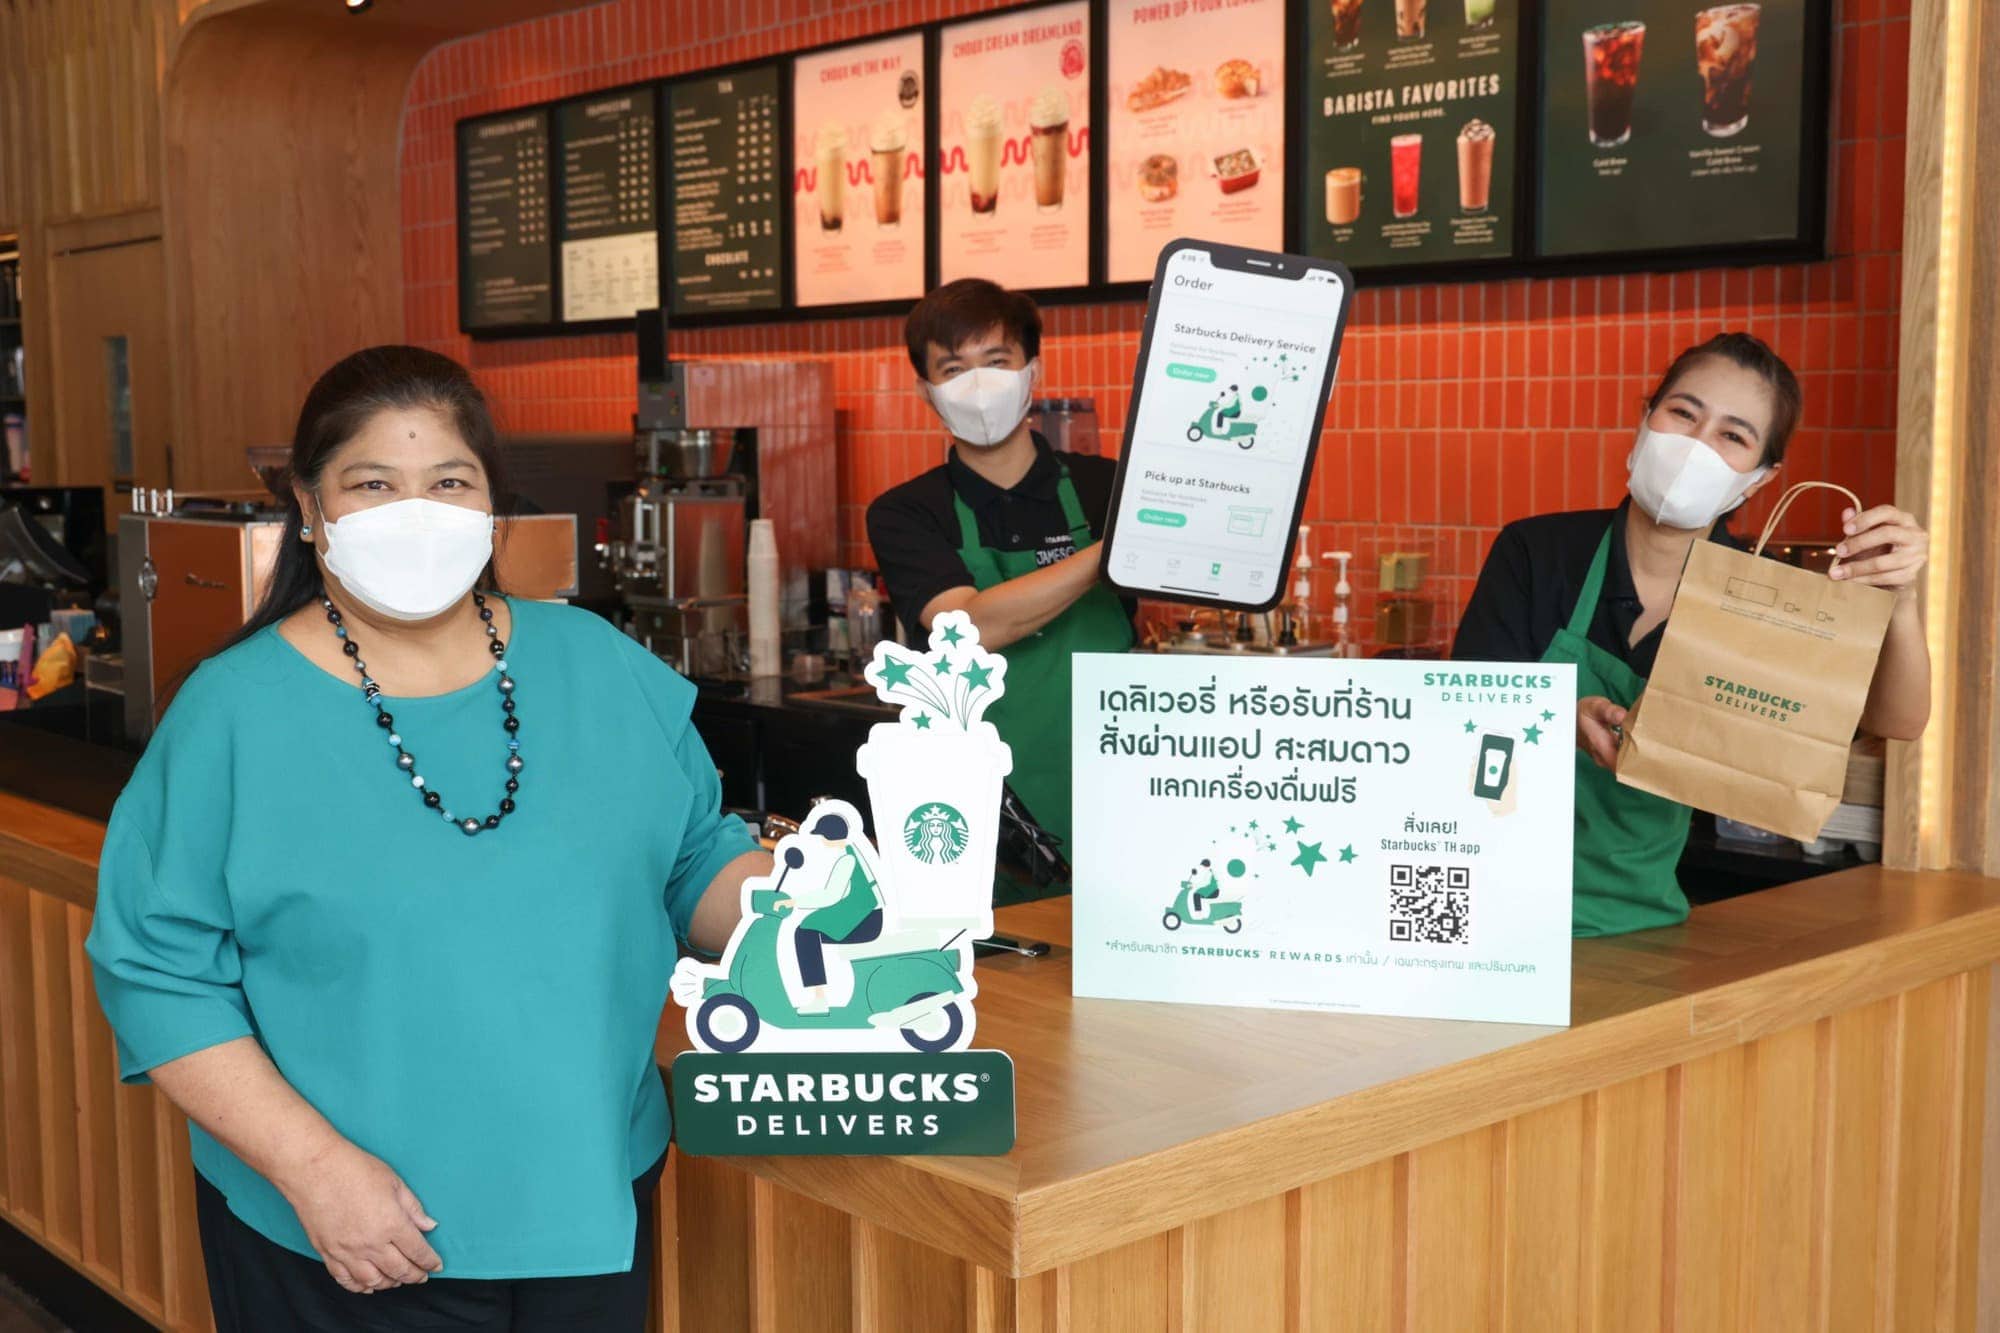 สตาร์บัคส์ เปิดตัวบริการเดลิเวอรี่บนแอปพลิเคชัน Starbucks Thailand 1